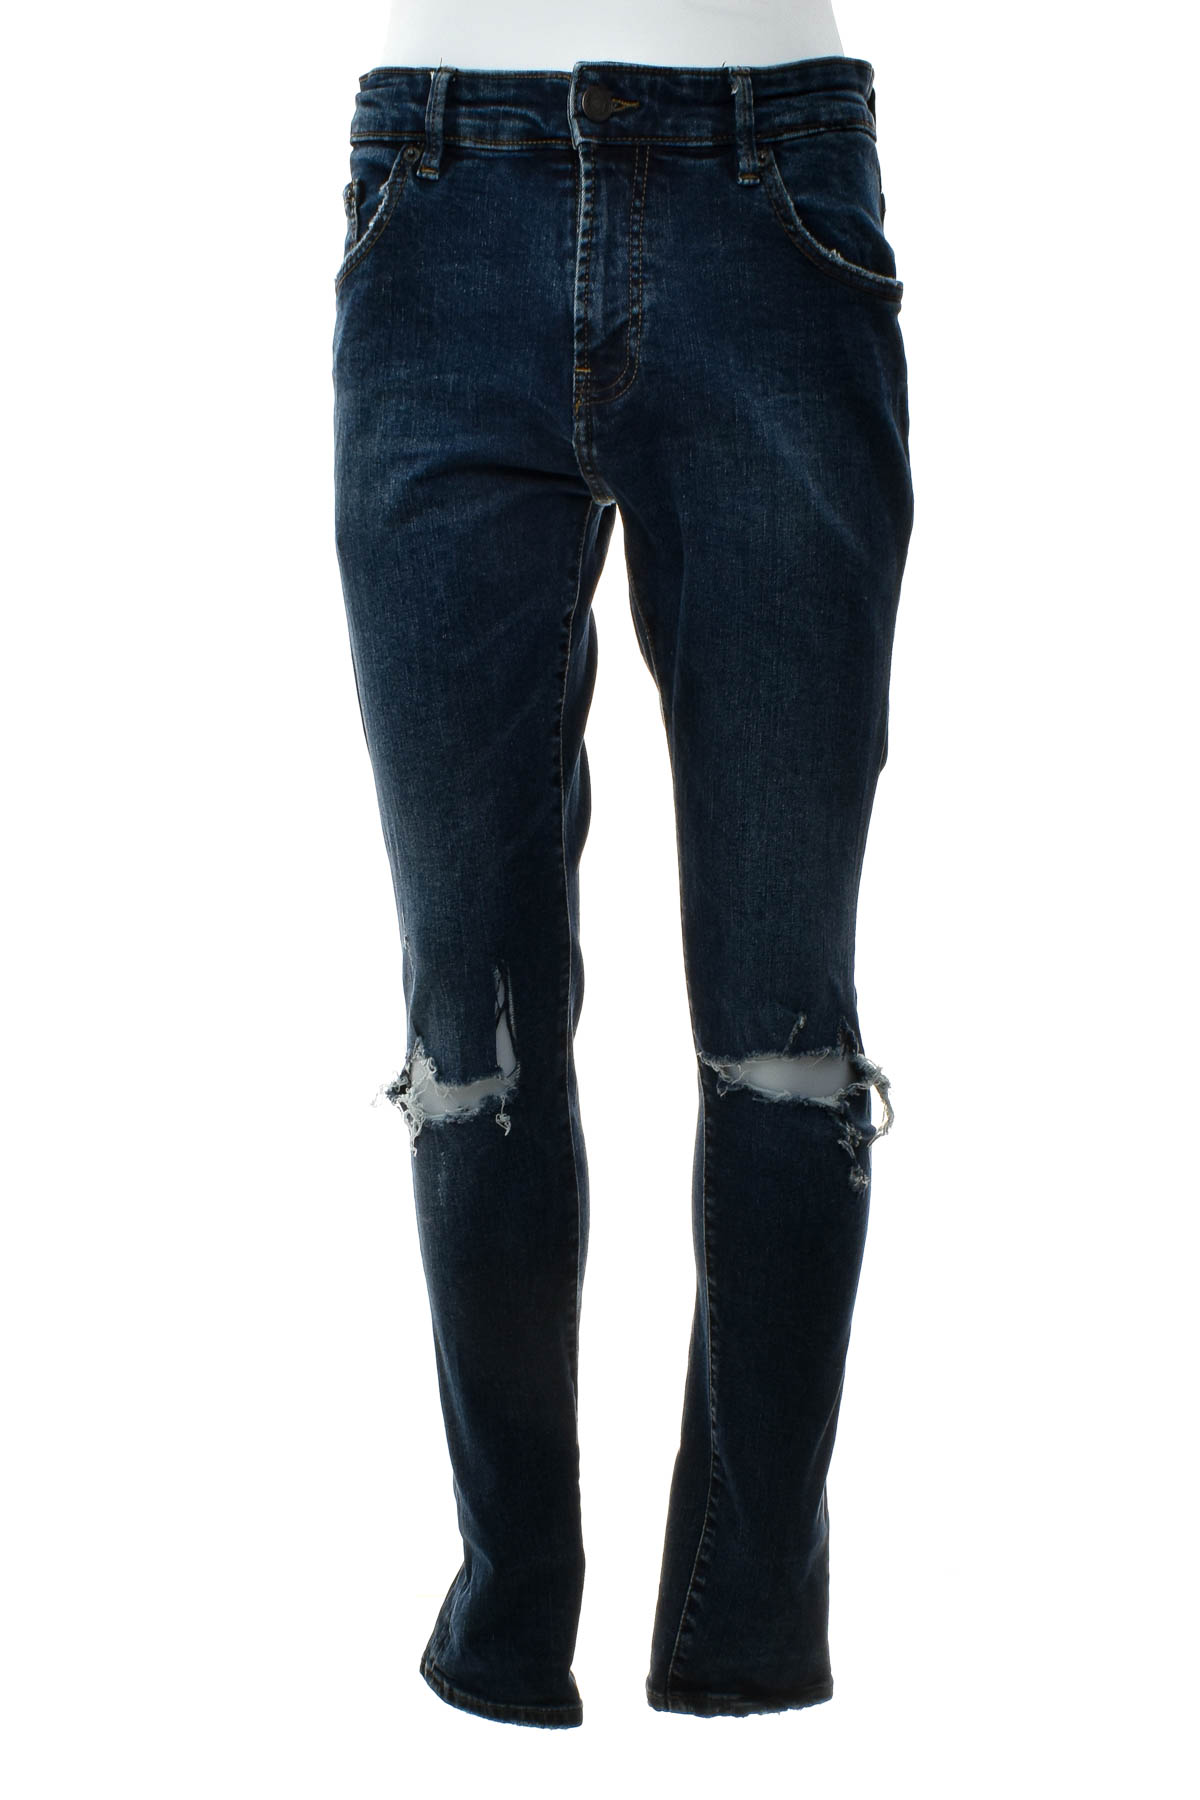 Jeans pentru bărbăți - Pull & Bear - 0